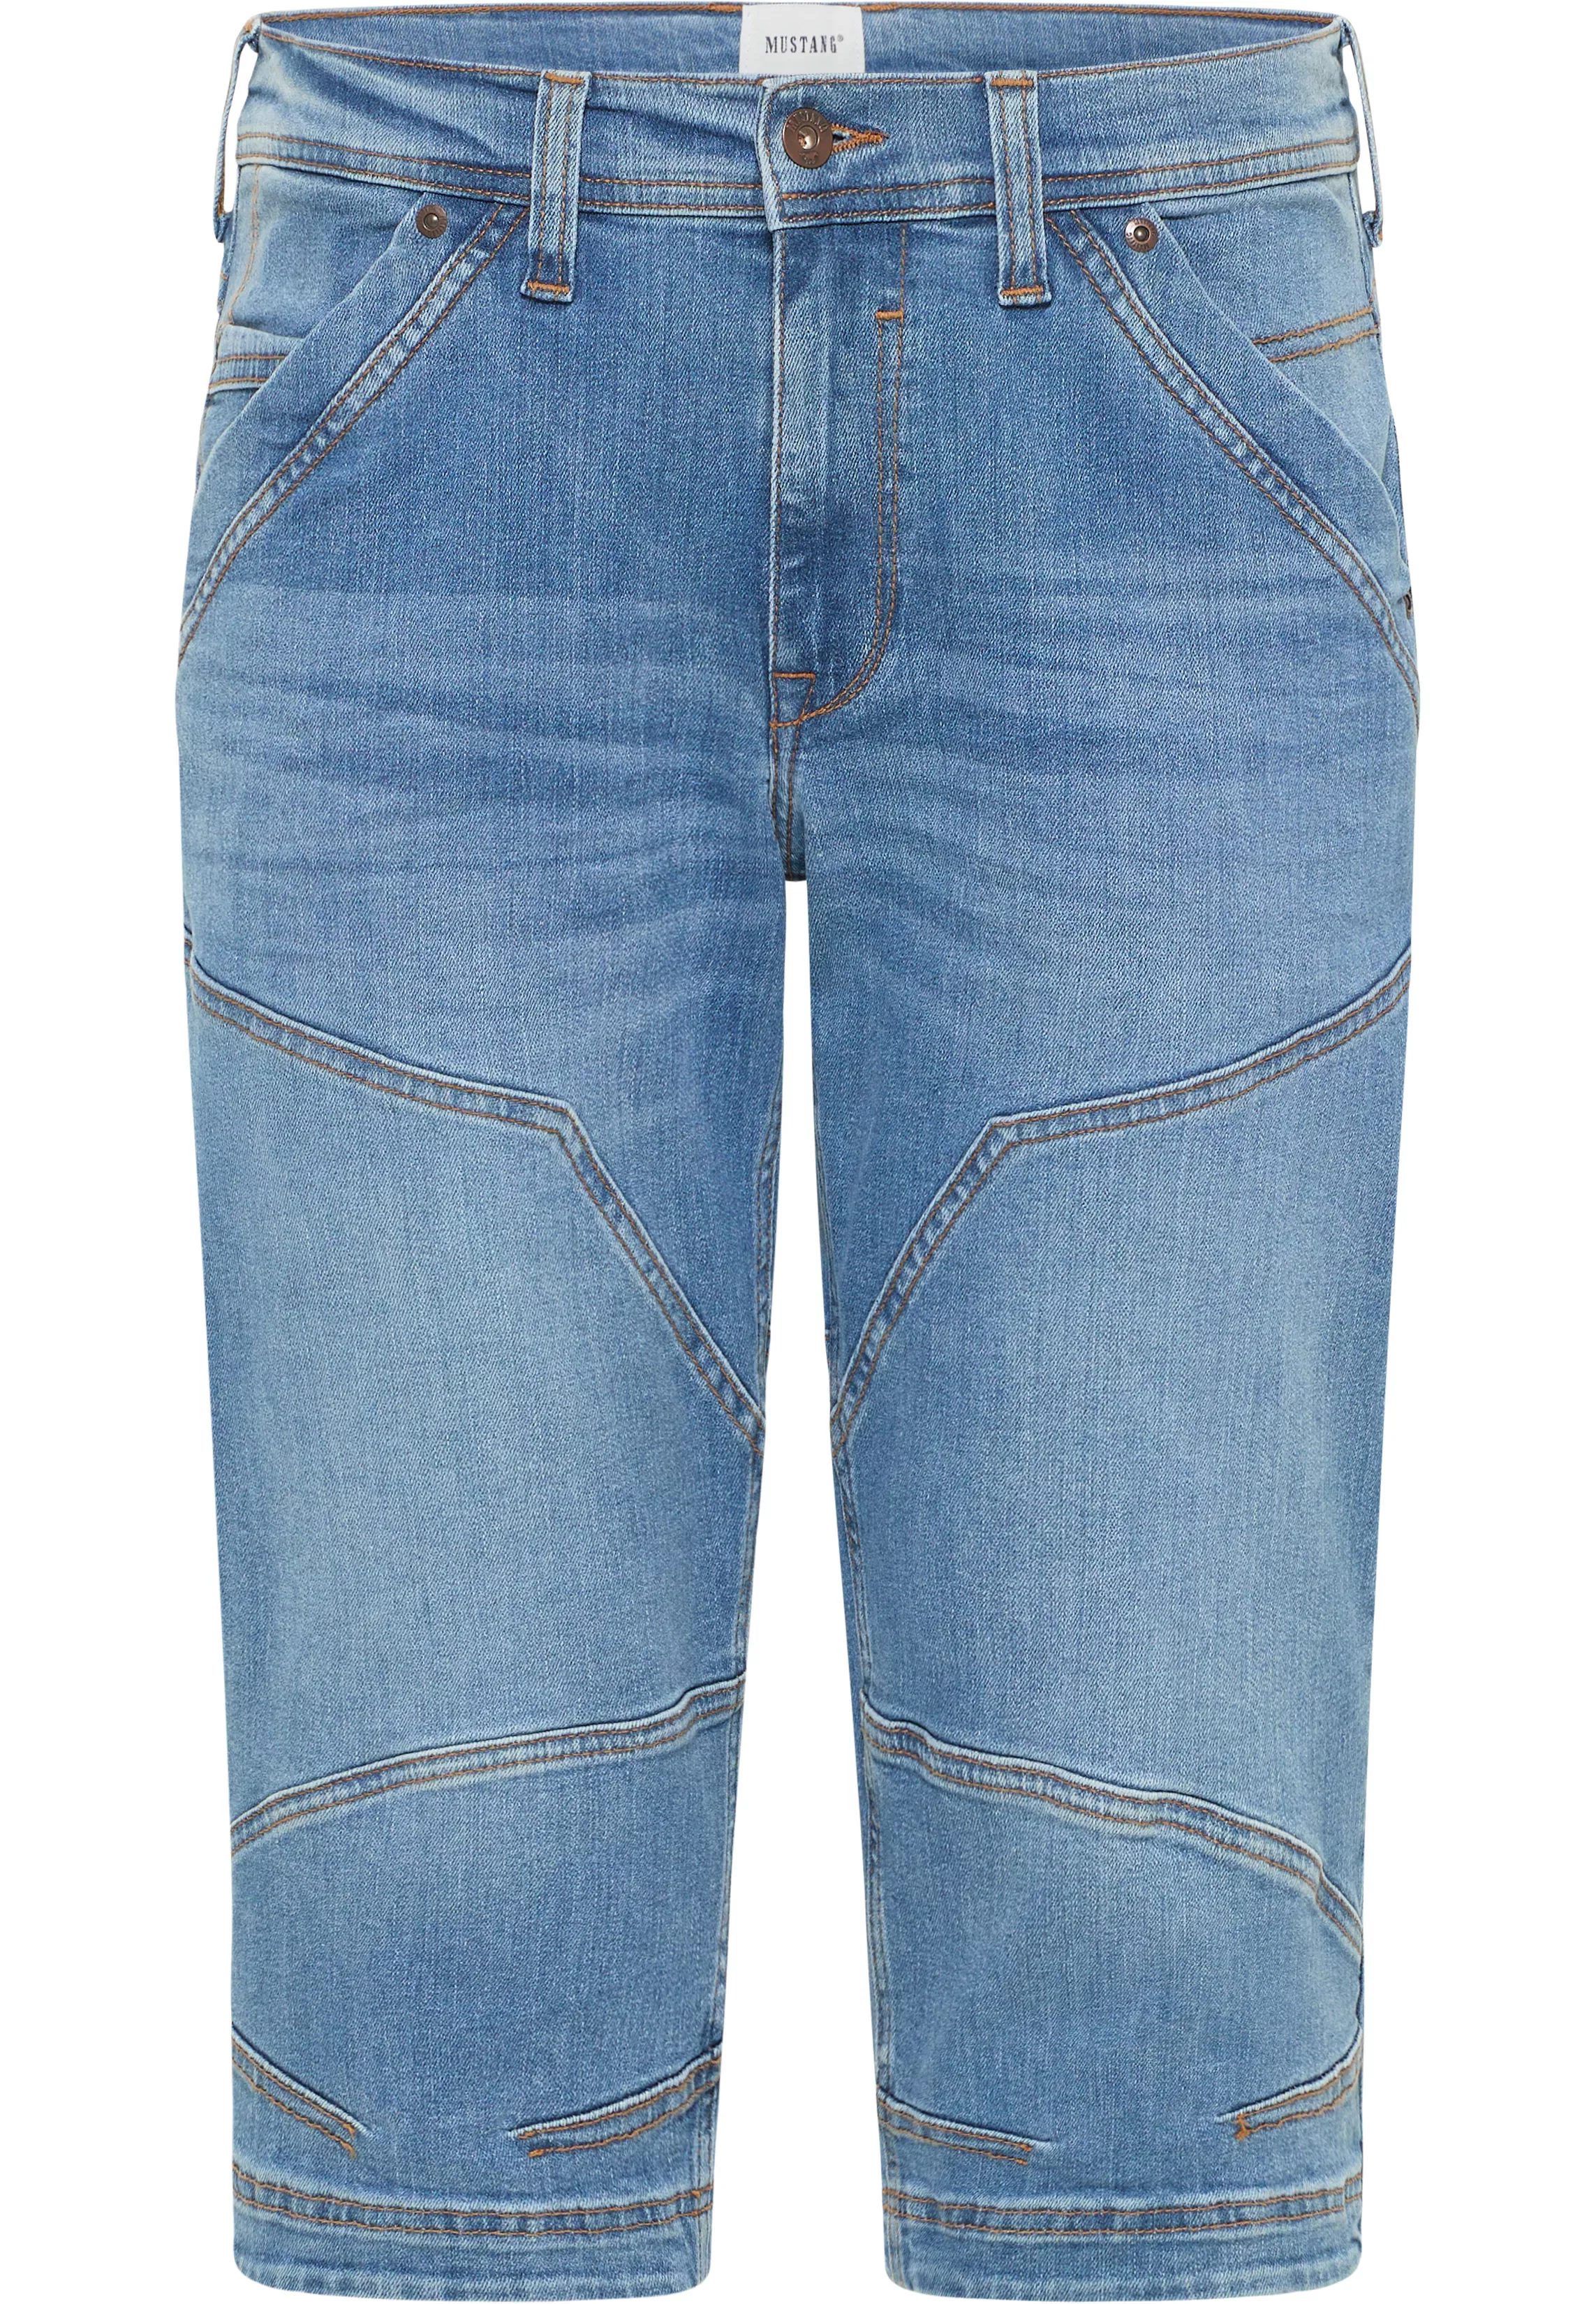 MUSTANG Jeansshorts "Style Fremont Shorts" günstig online kaufen